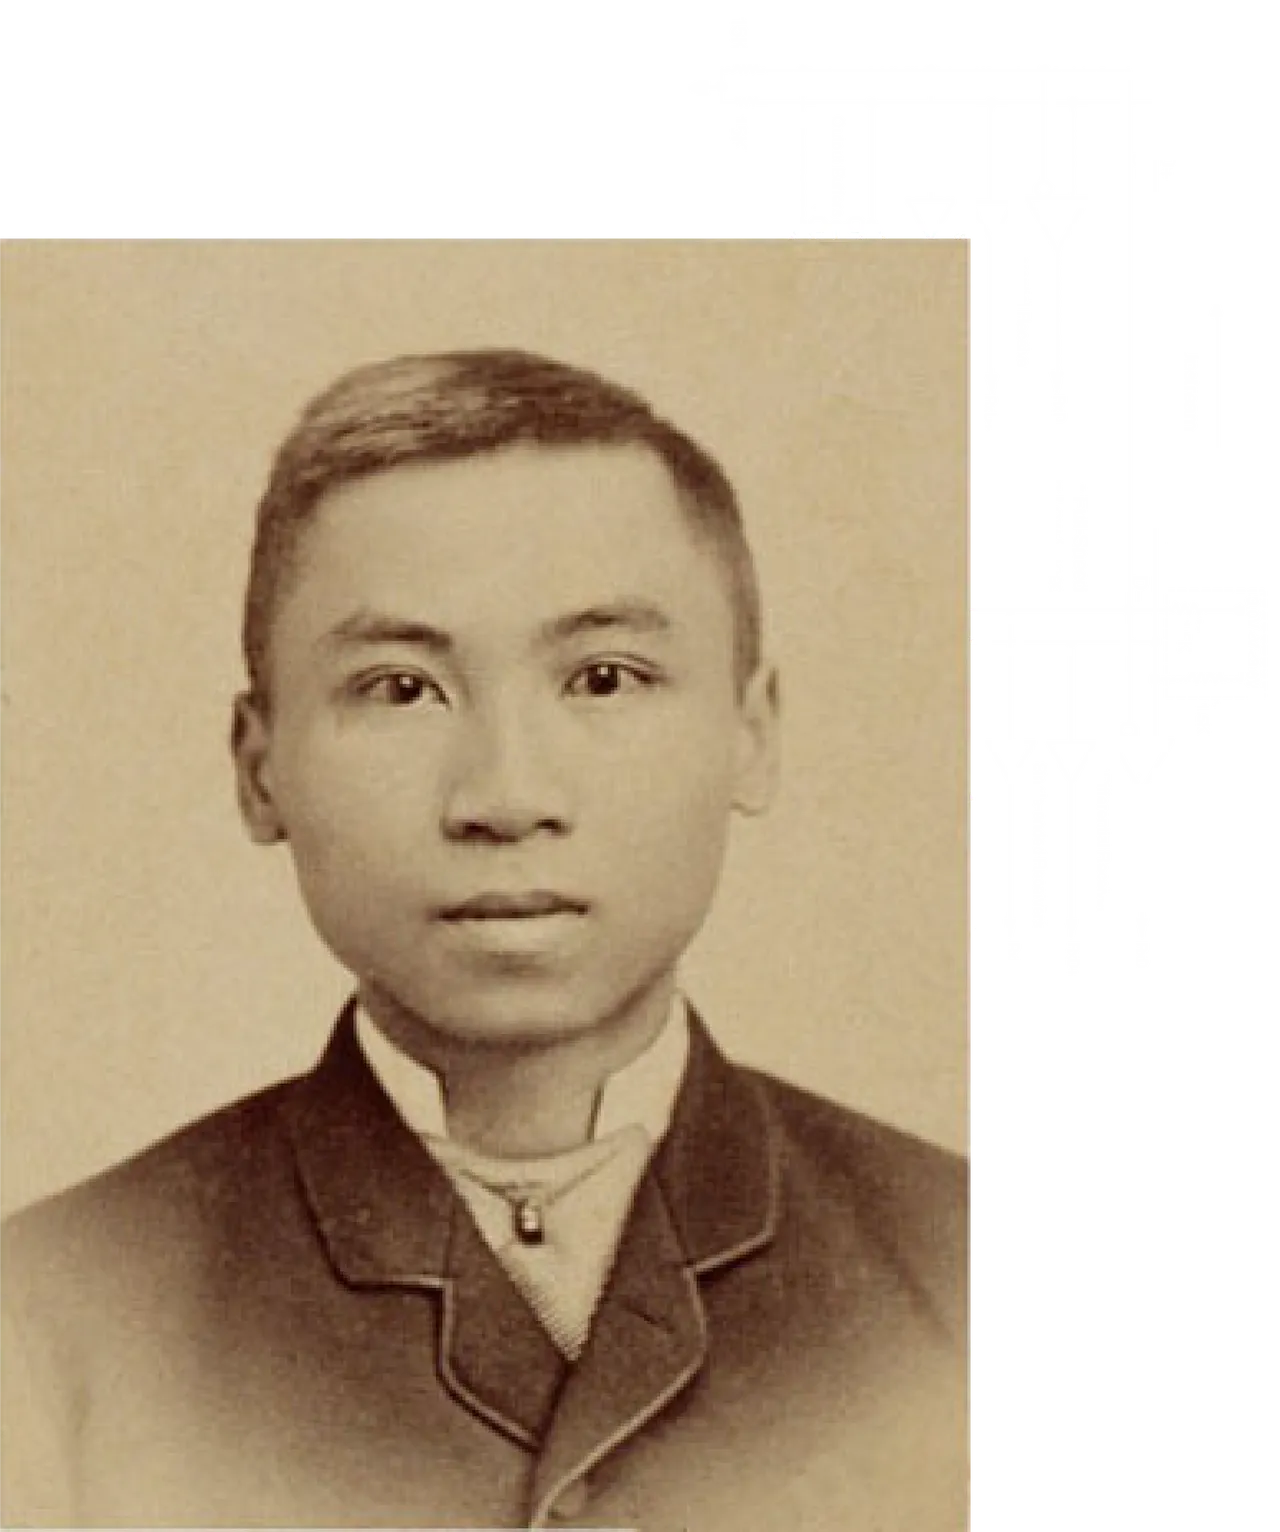 Luo Guorui (罗国瑞)